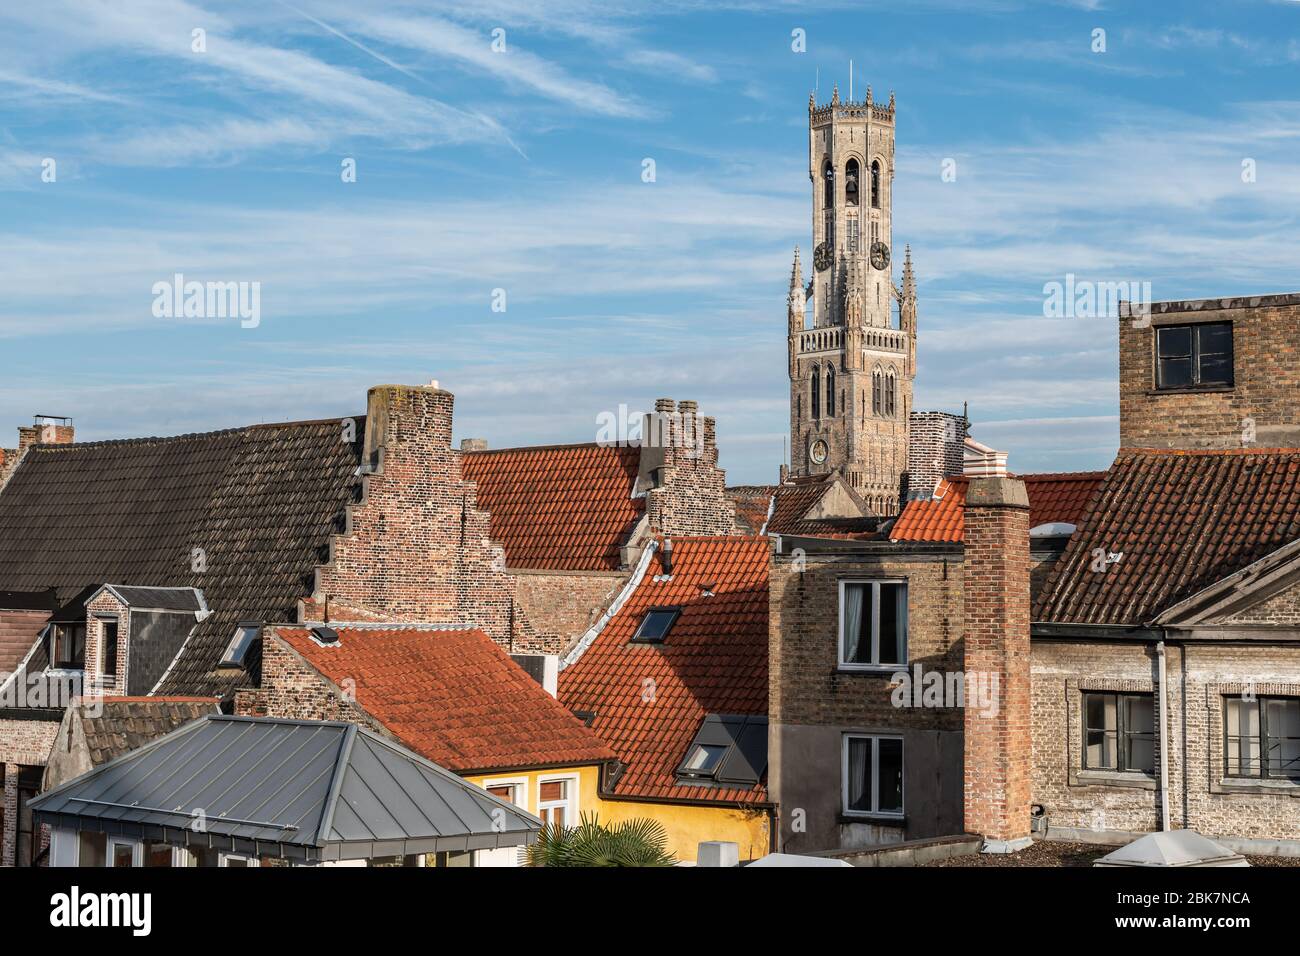 Vue sur la vieille ville de Bruges Belgique. La tour Belfry dépasse des toits de tuiles typiques. Banque D'Images